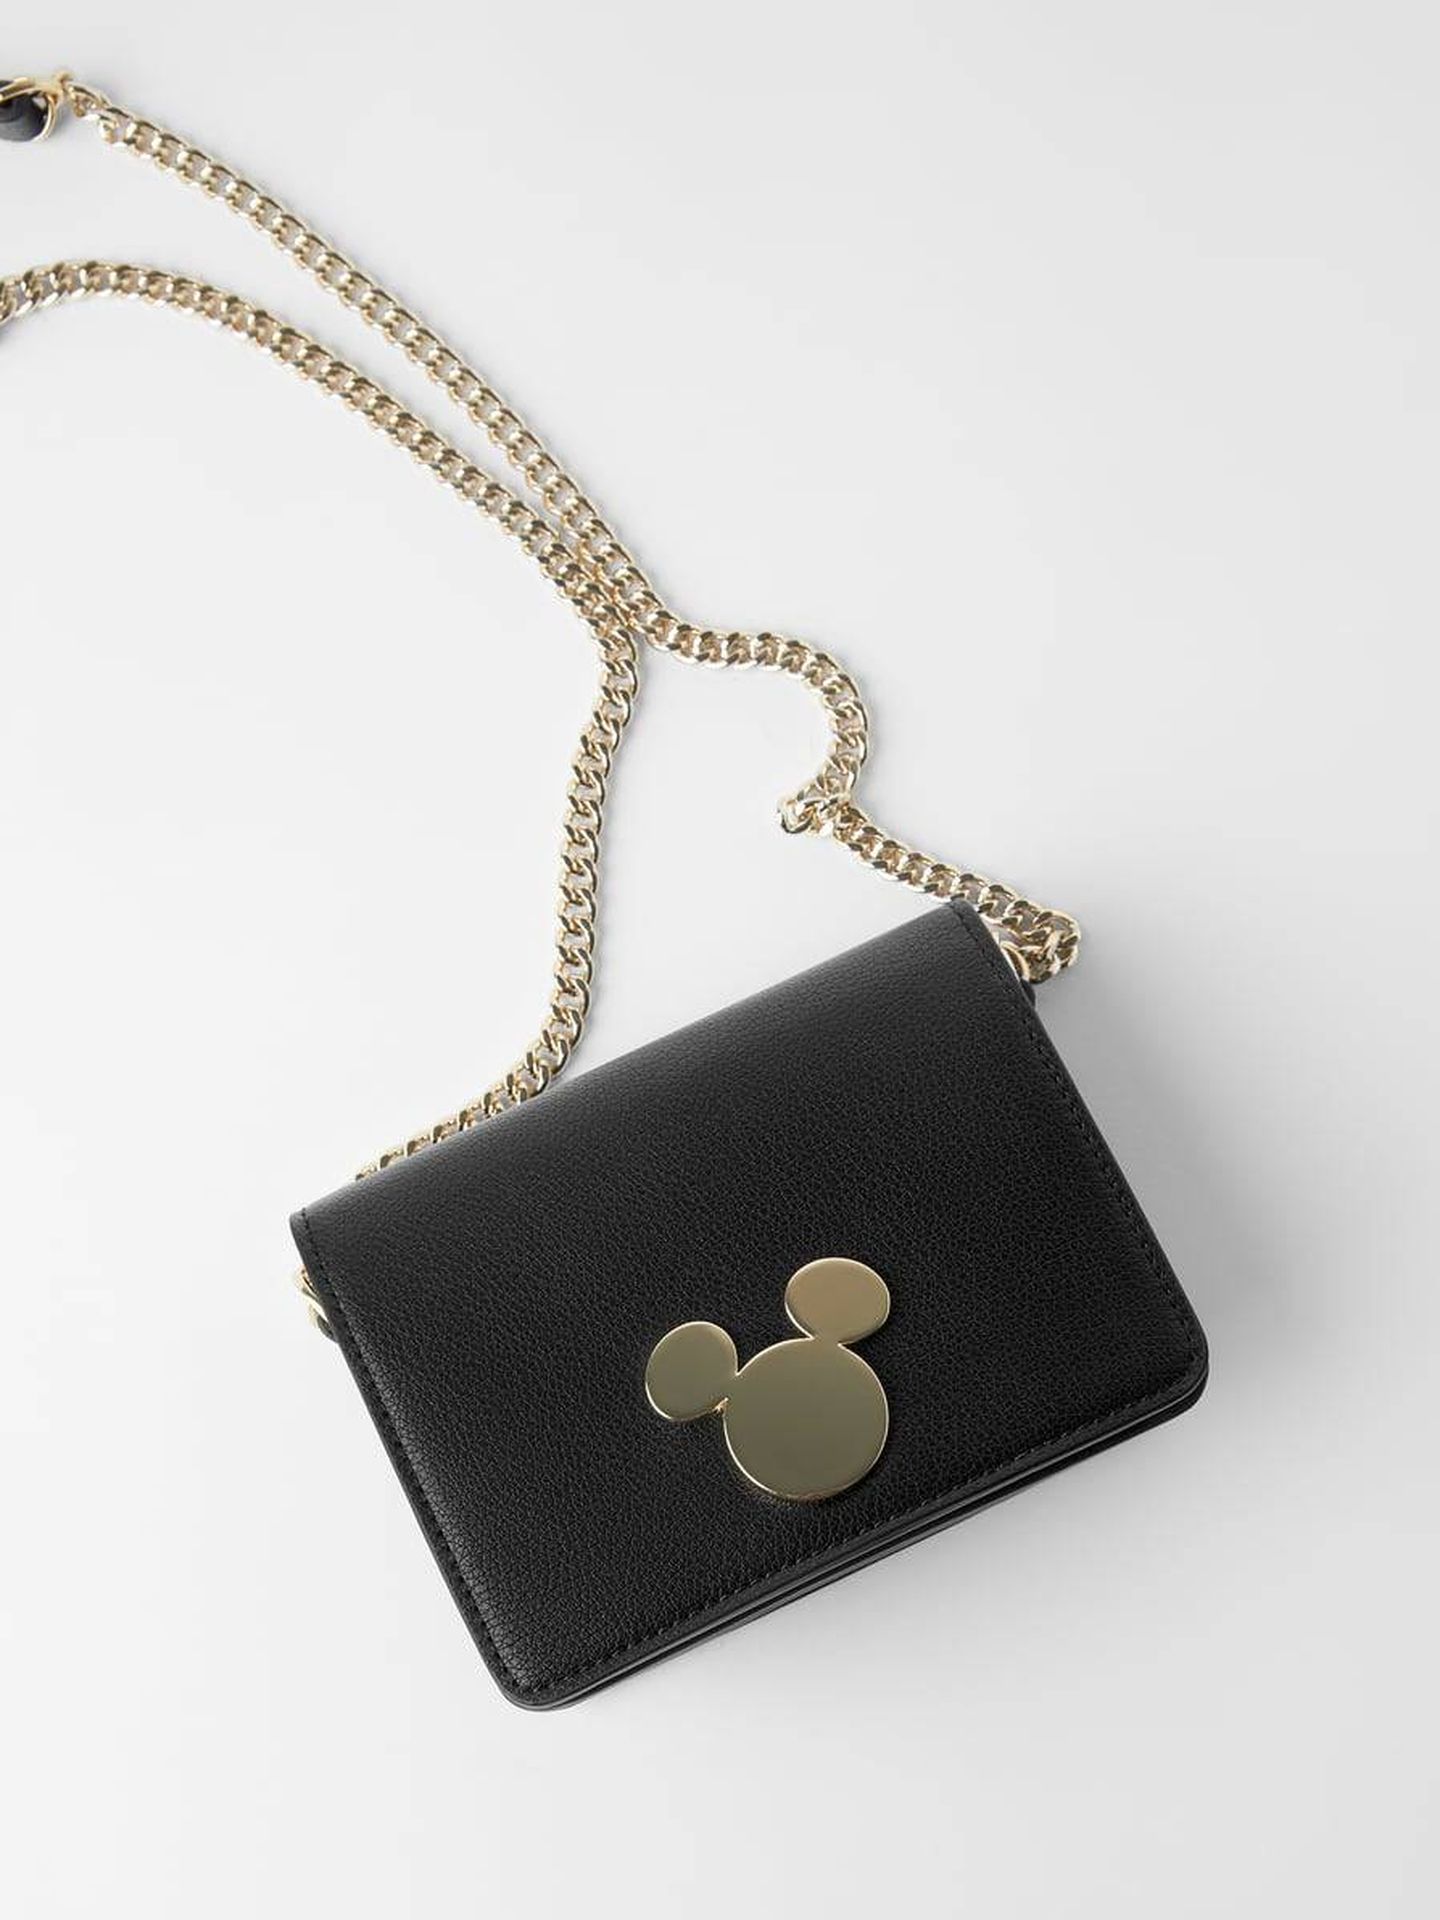 El bolso de Zara con la silueta de Mickey Mouse. (Cortesía)